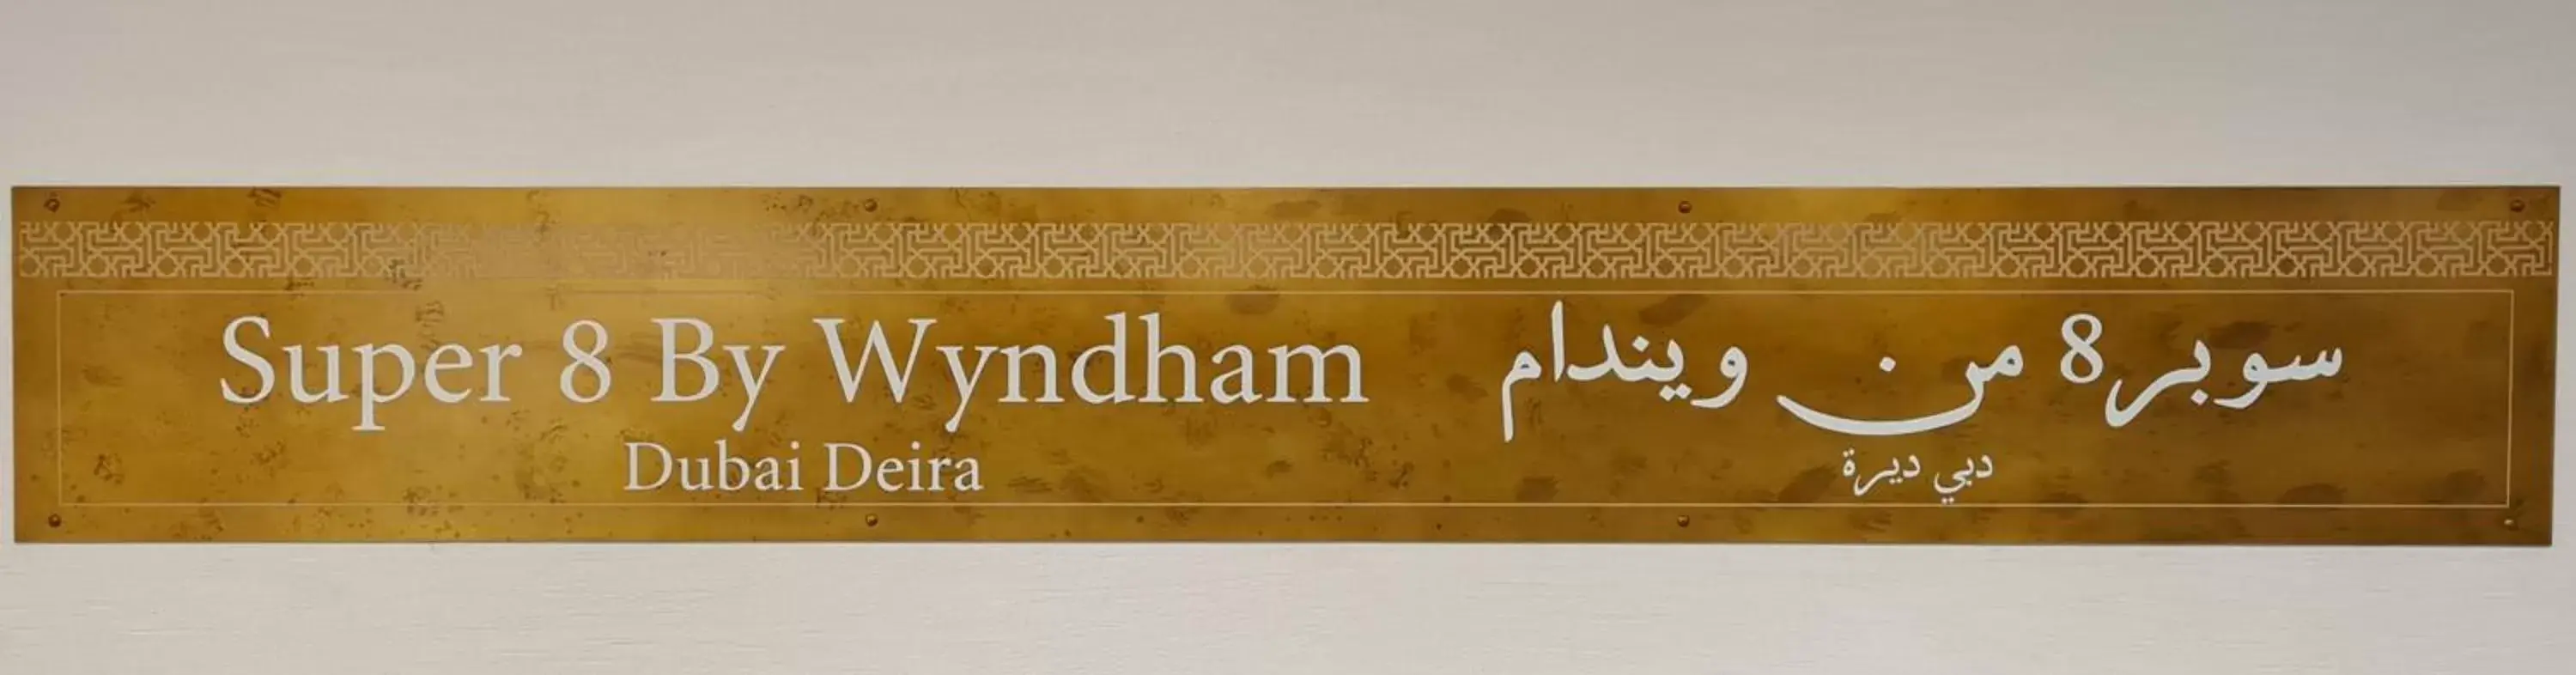 Decorative detail in Super 8 by Wyndham Dubai Deira